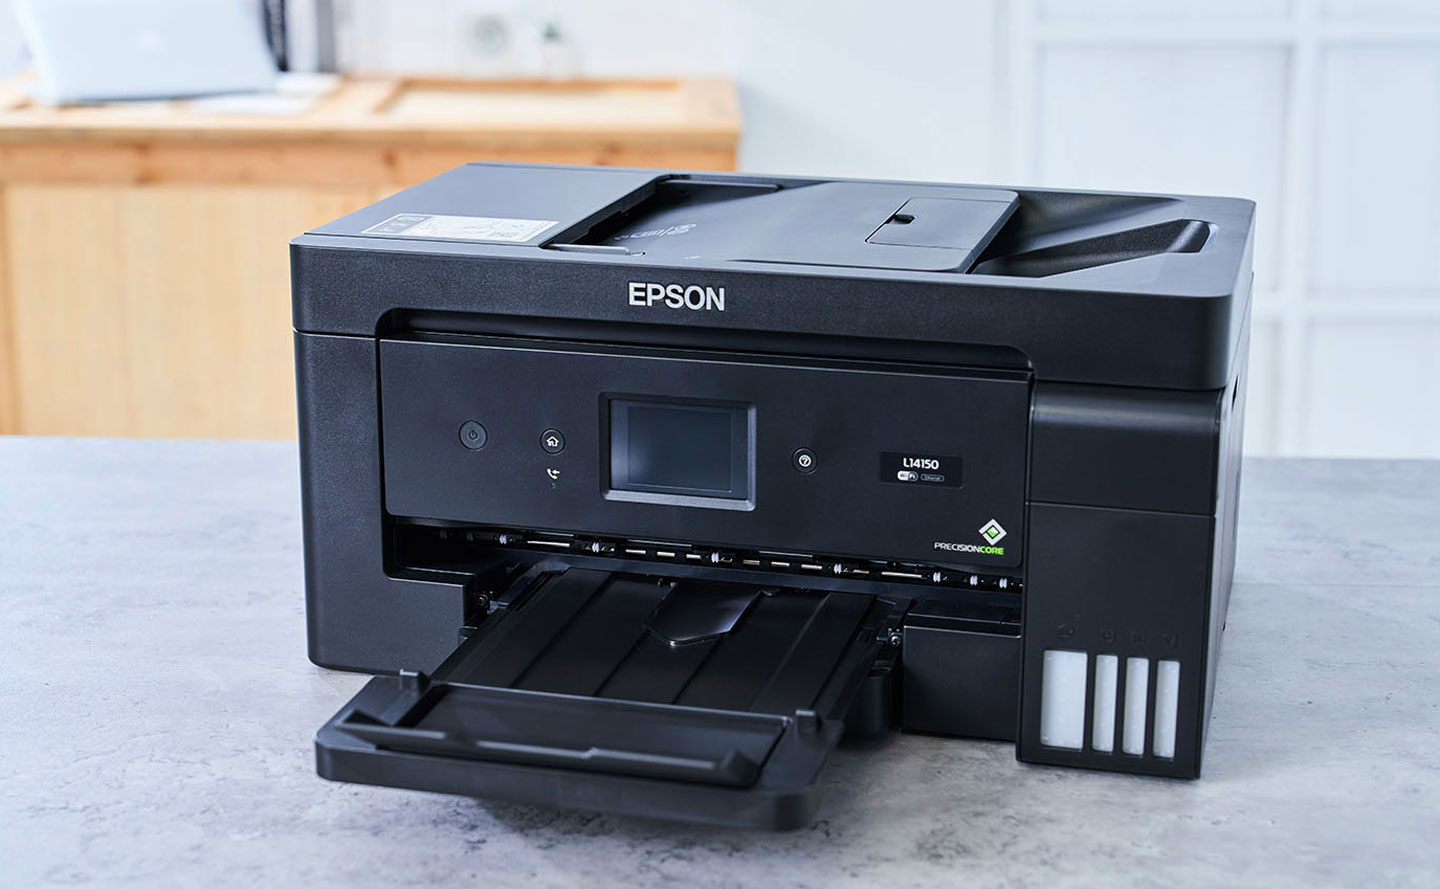 Epson L A3 高速雙網連續供墨複合機評測 充分滿足辦工事務所需的高cp 值好夥伴 T客邦